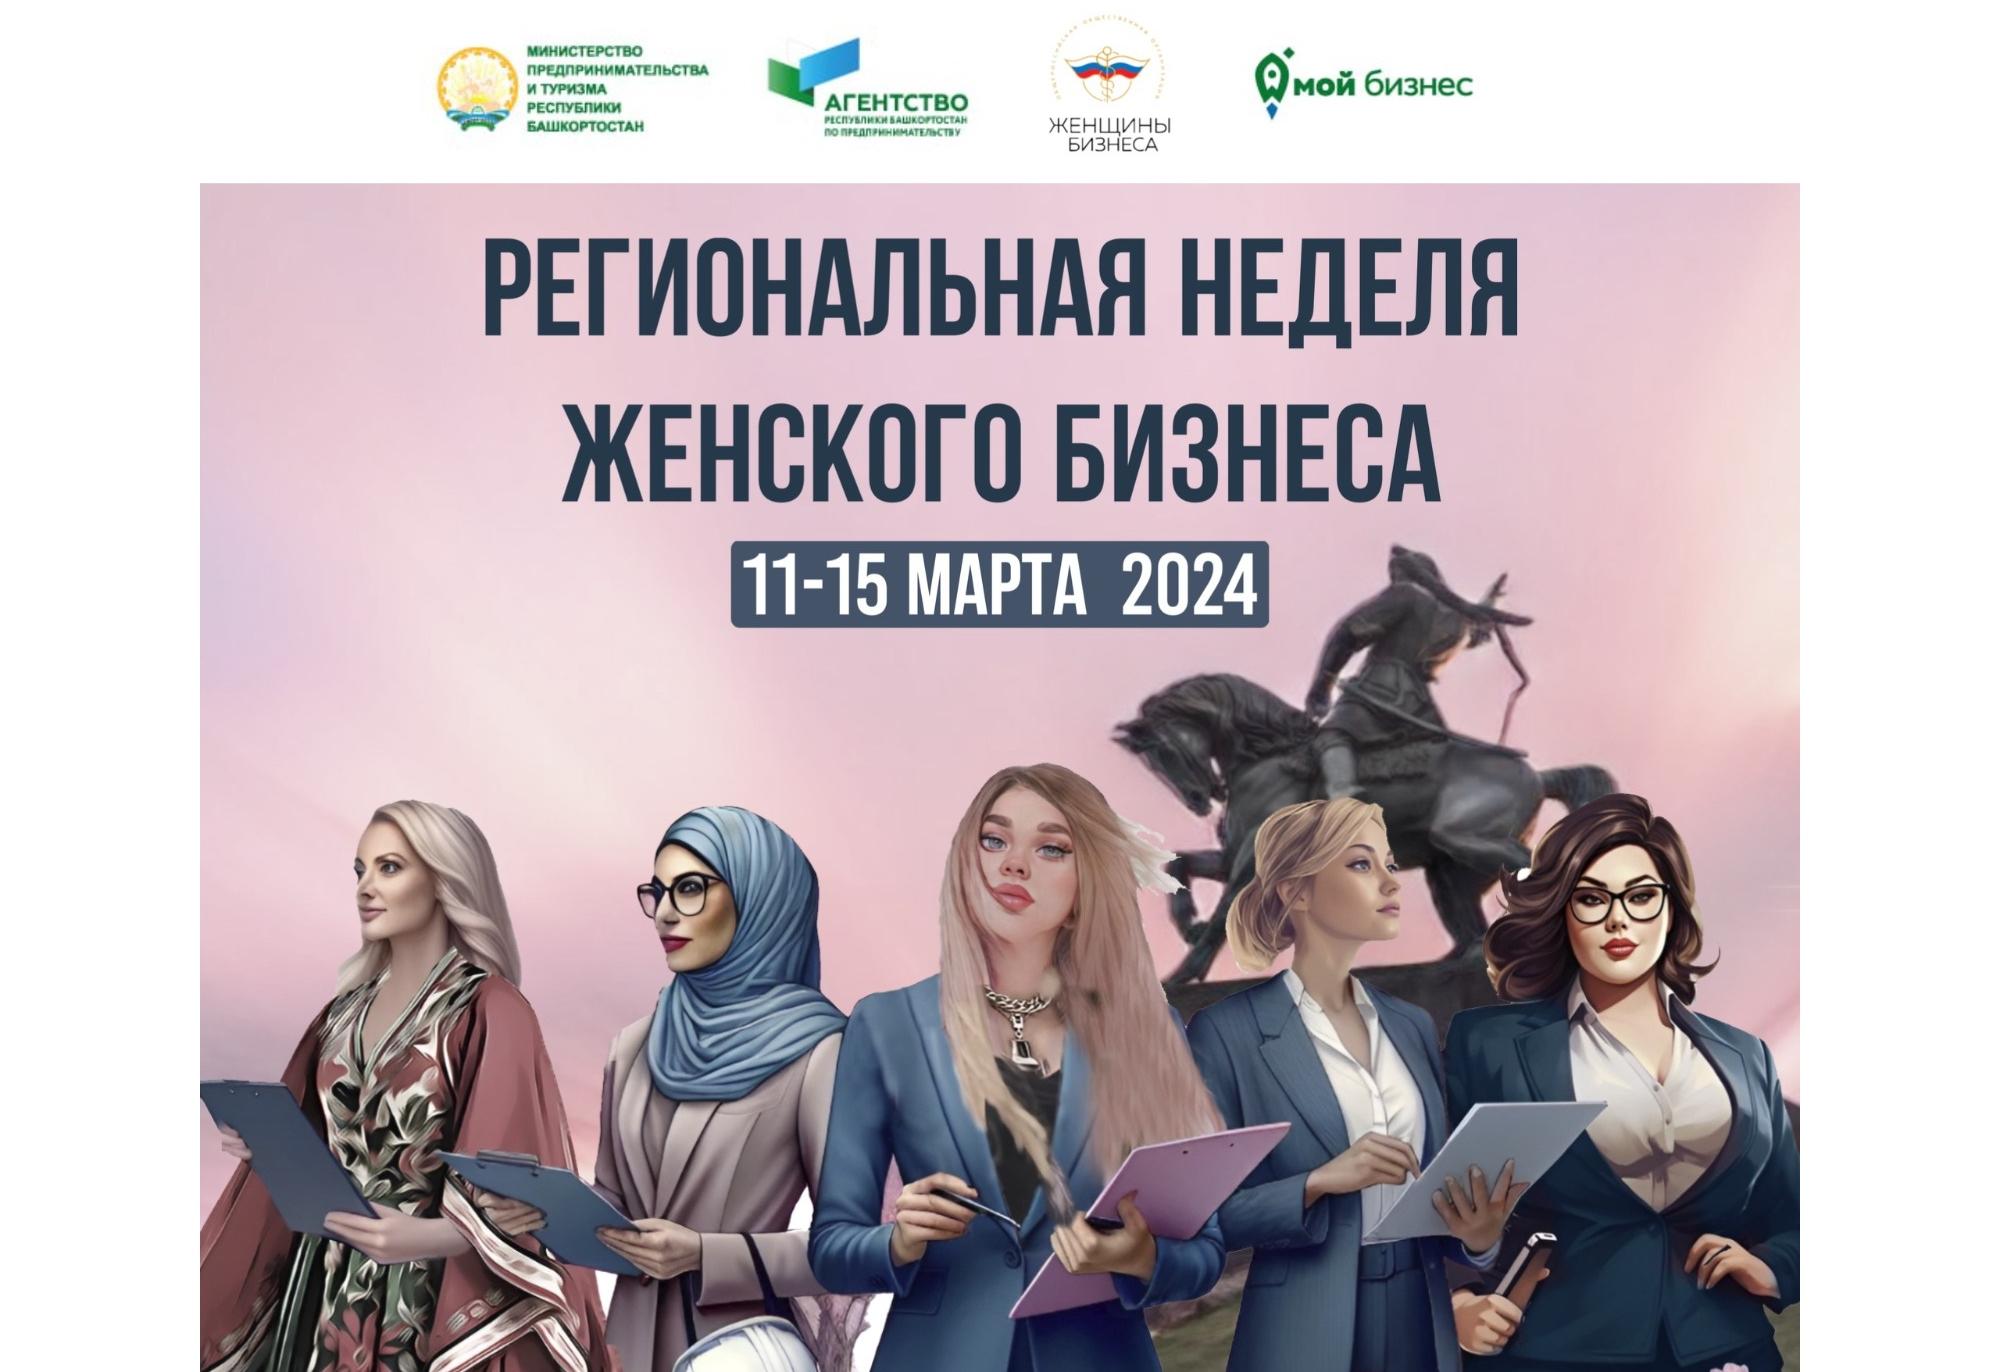 Приглашаем принять участие в Региональной неделе женского бизнеса в Башкортостане